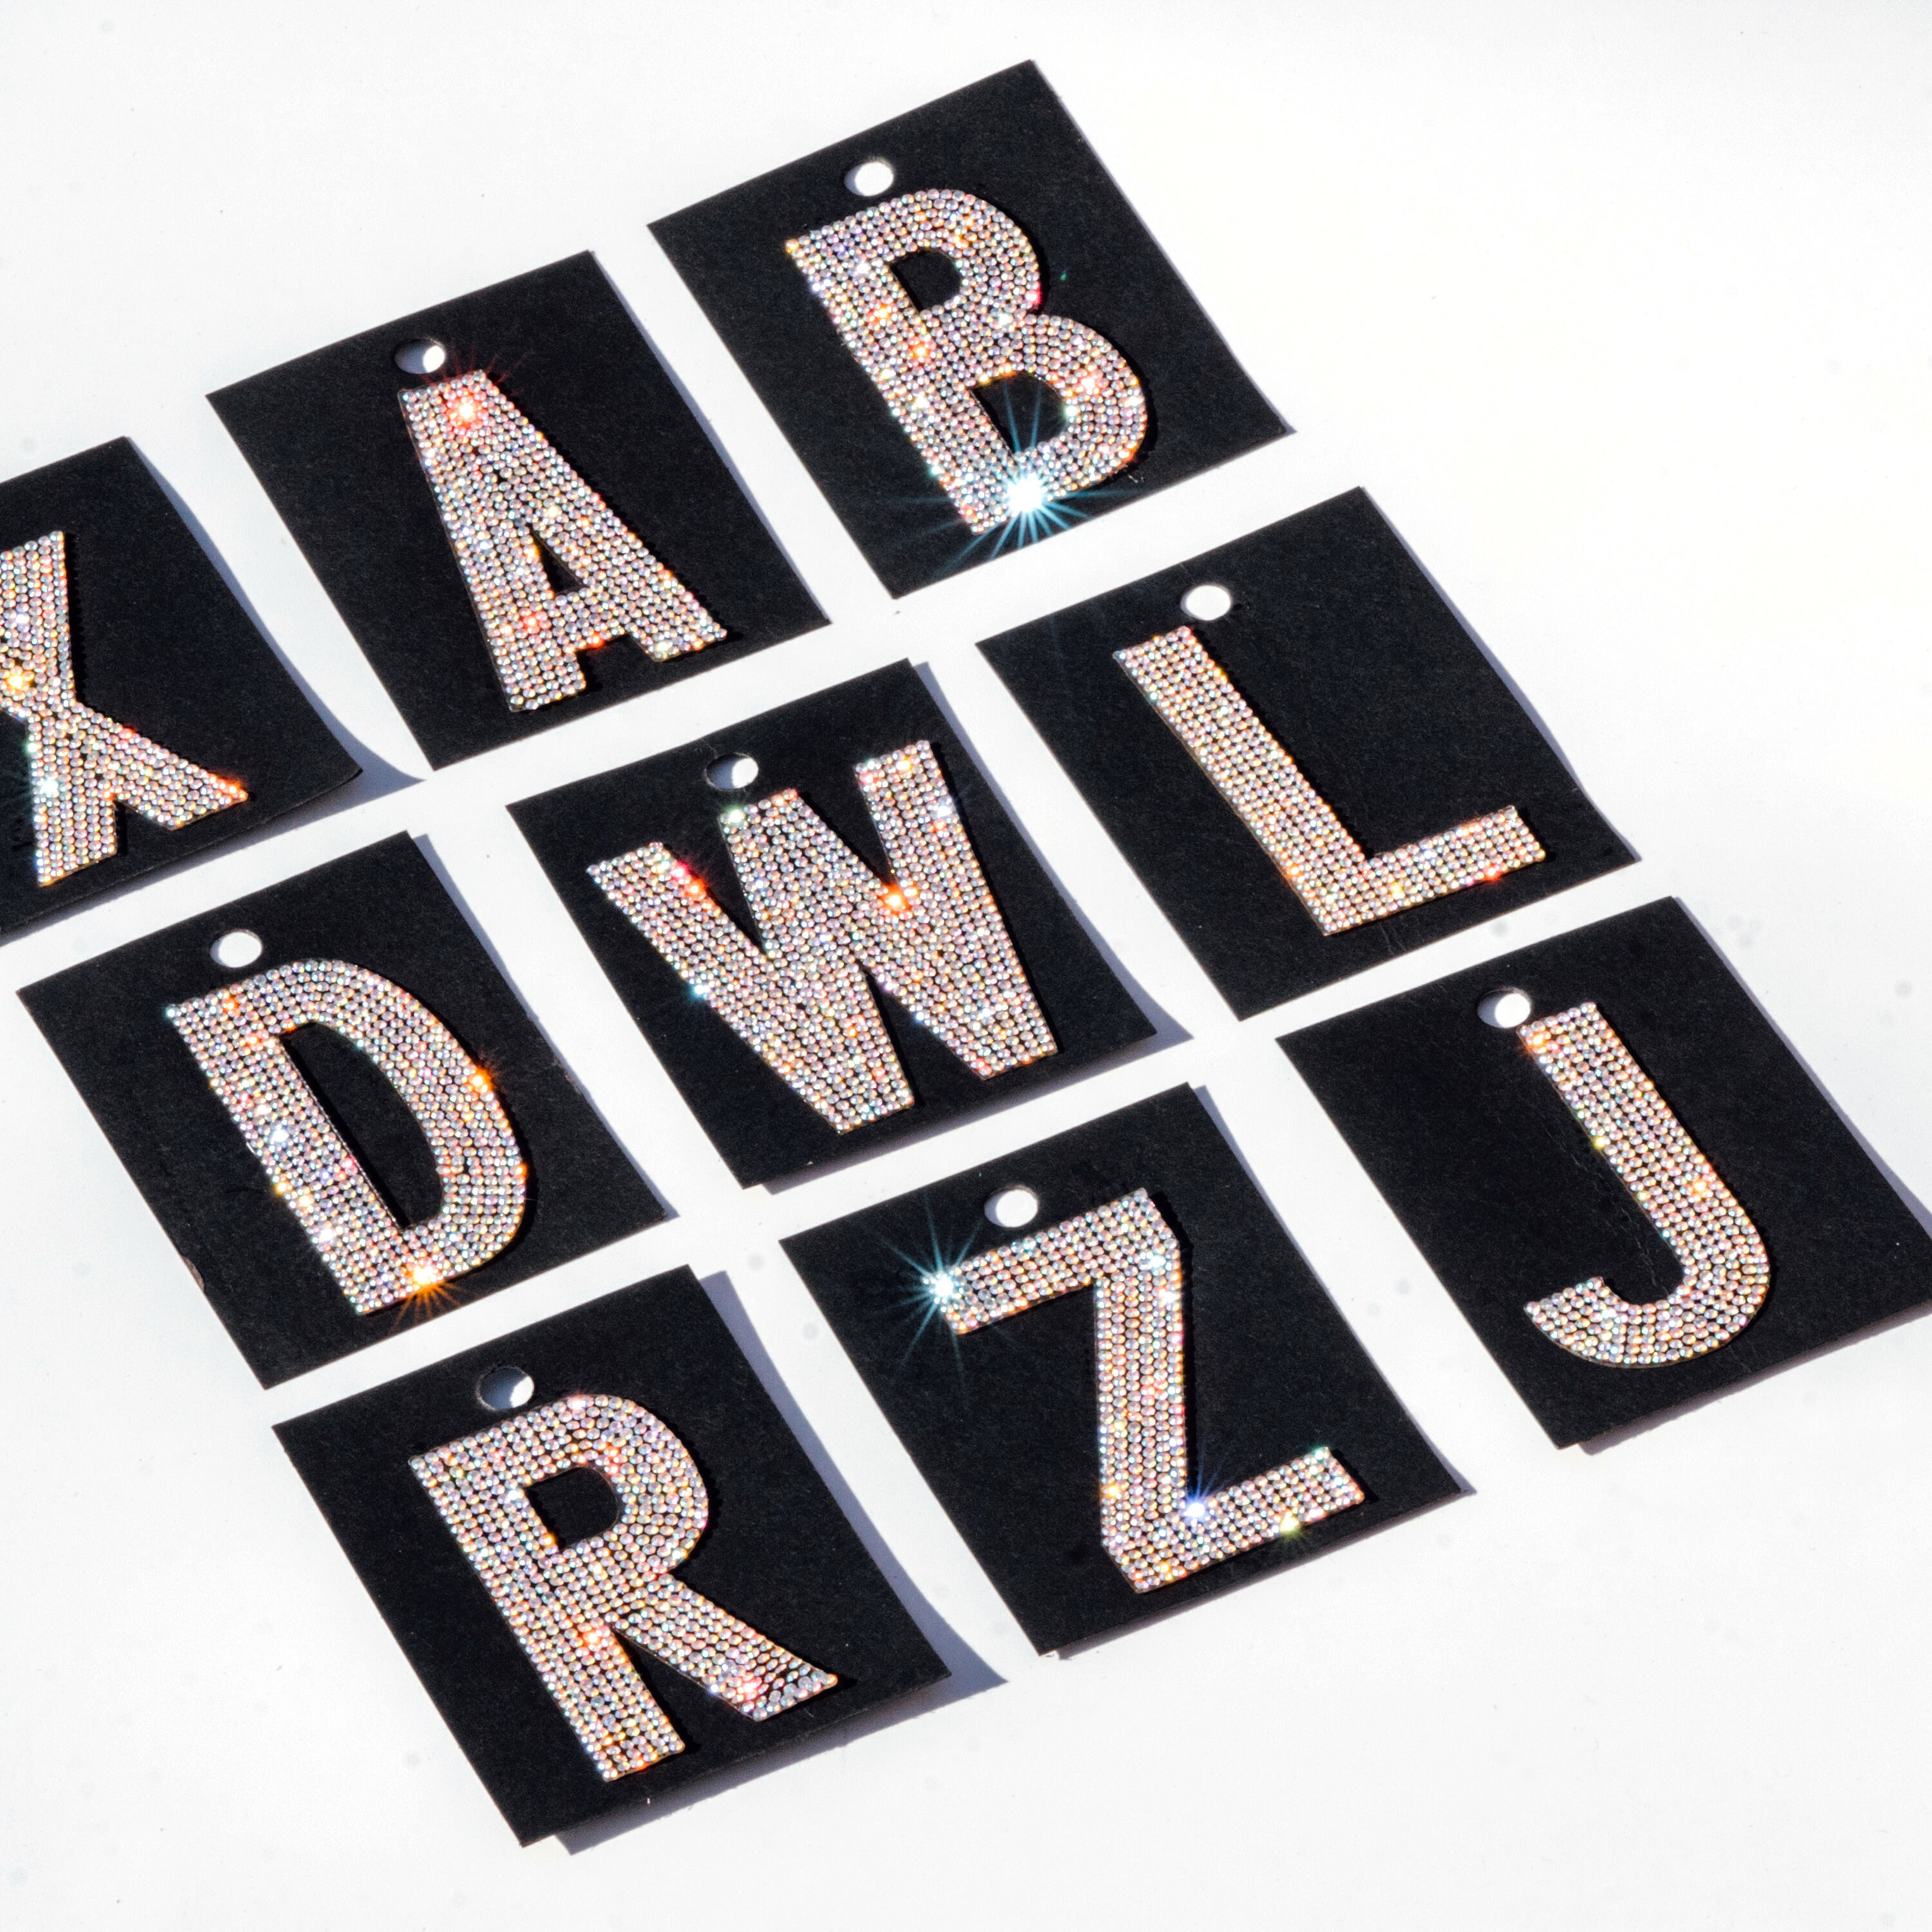 XL Iron-On Rhinestone Letters AB Crystal